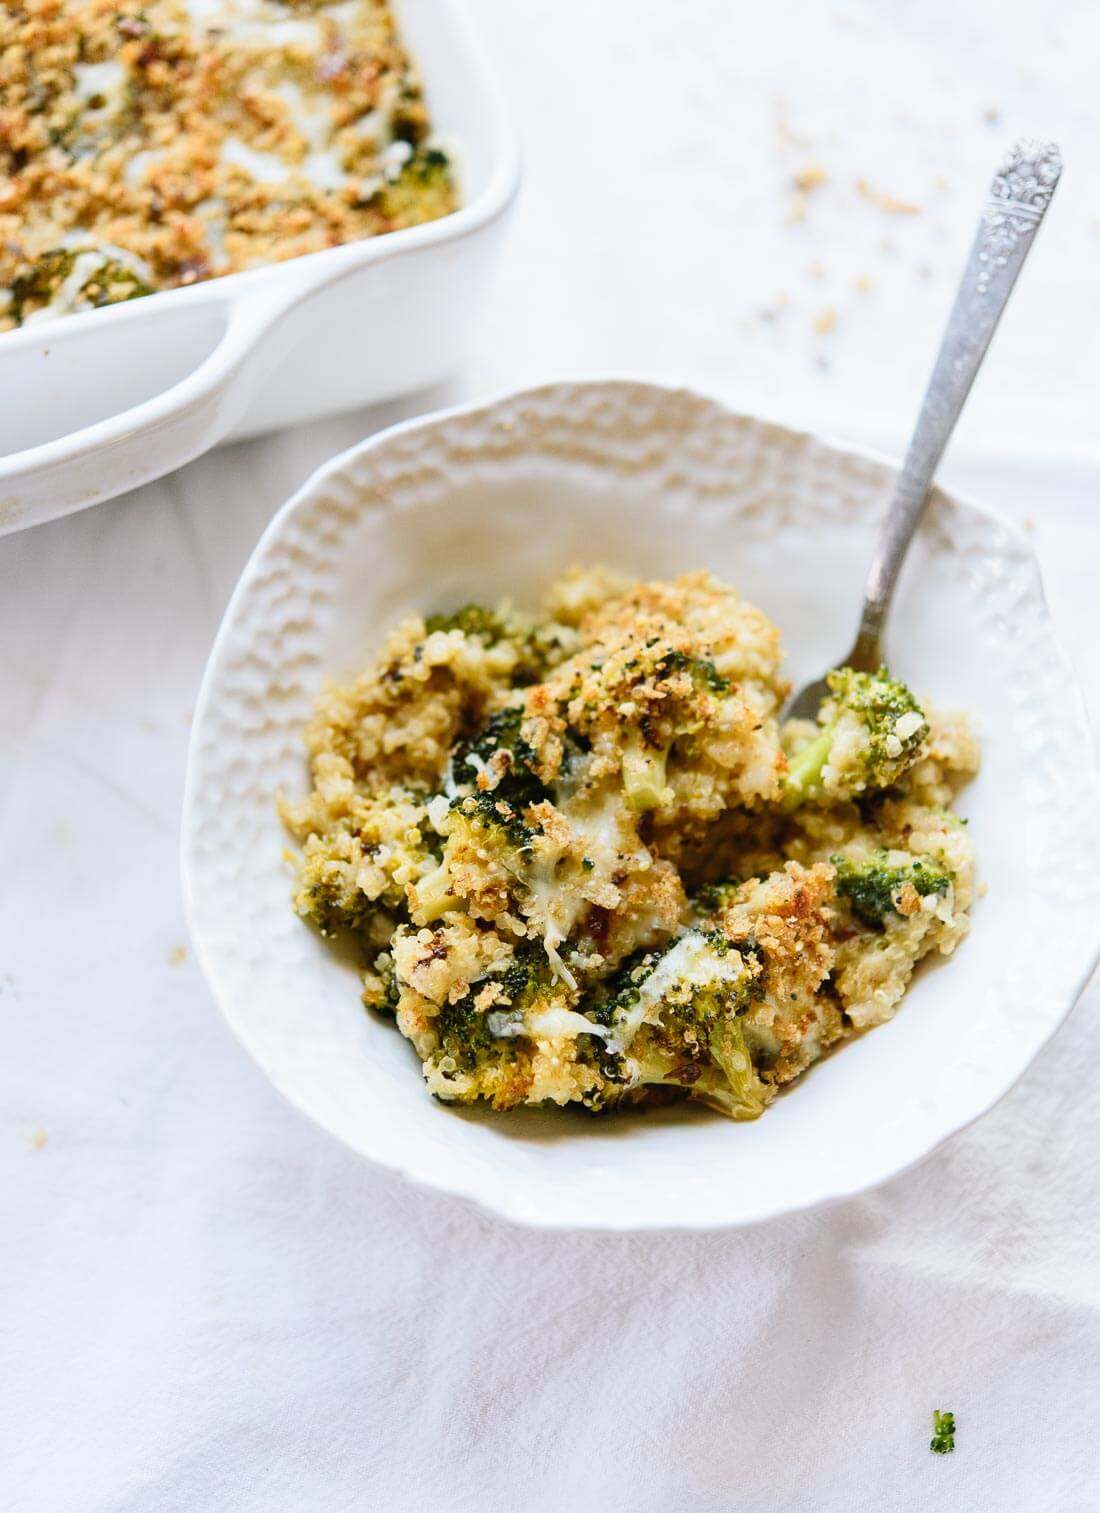 Healthier broccoli casserole with quinoa! cookieandkate.com